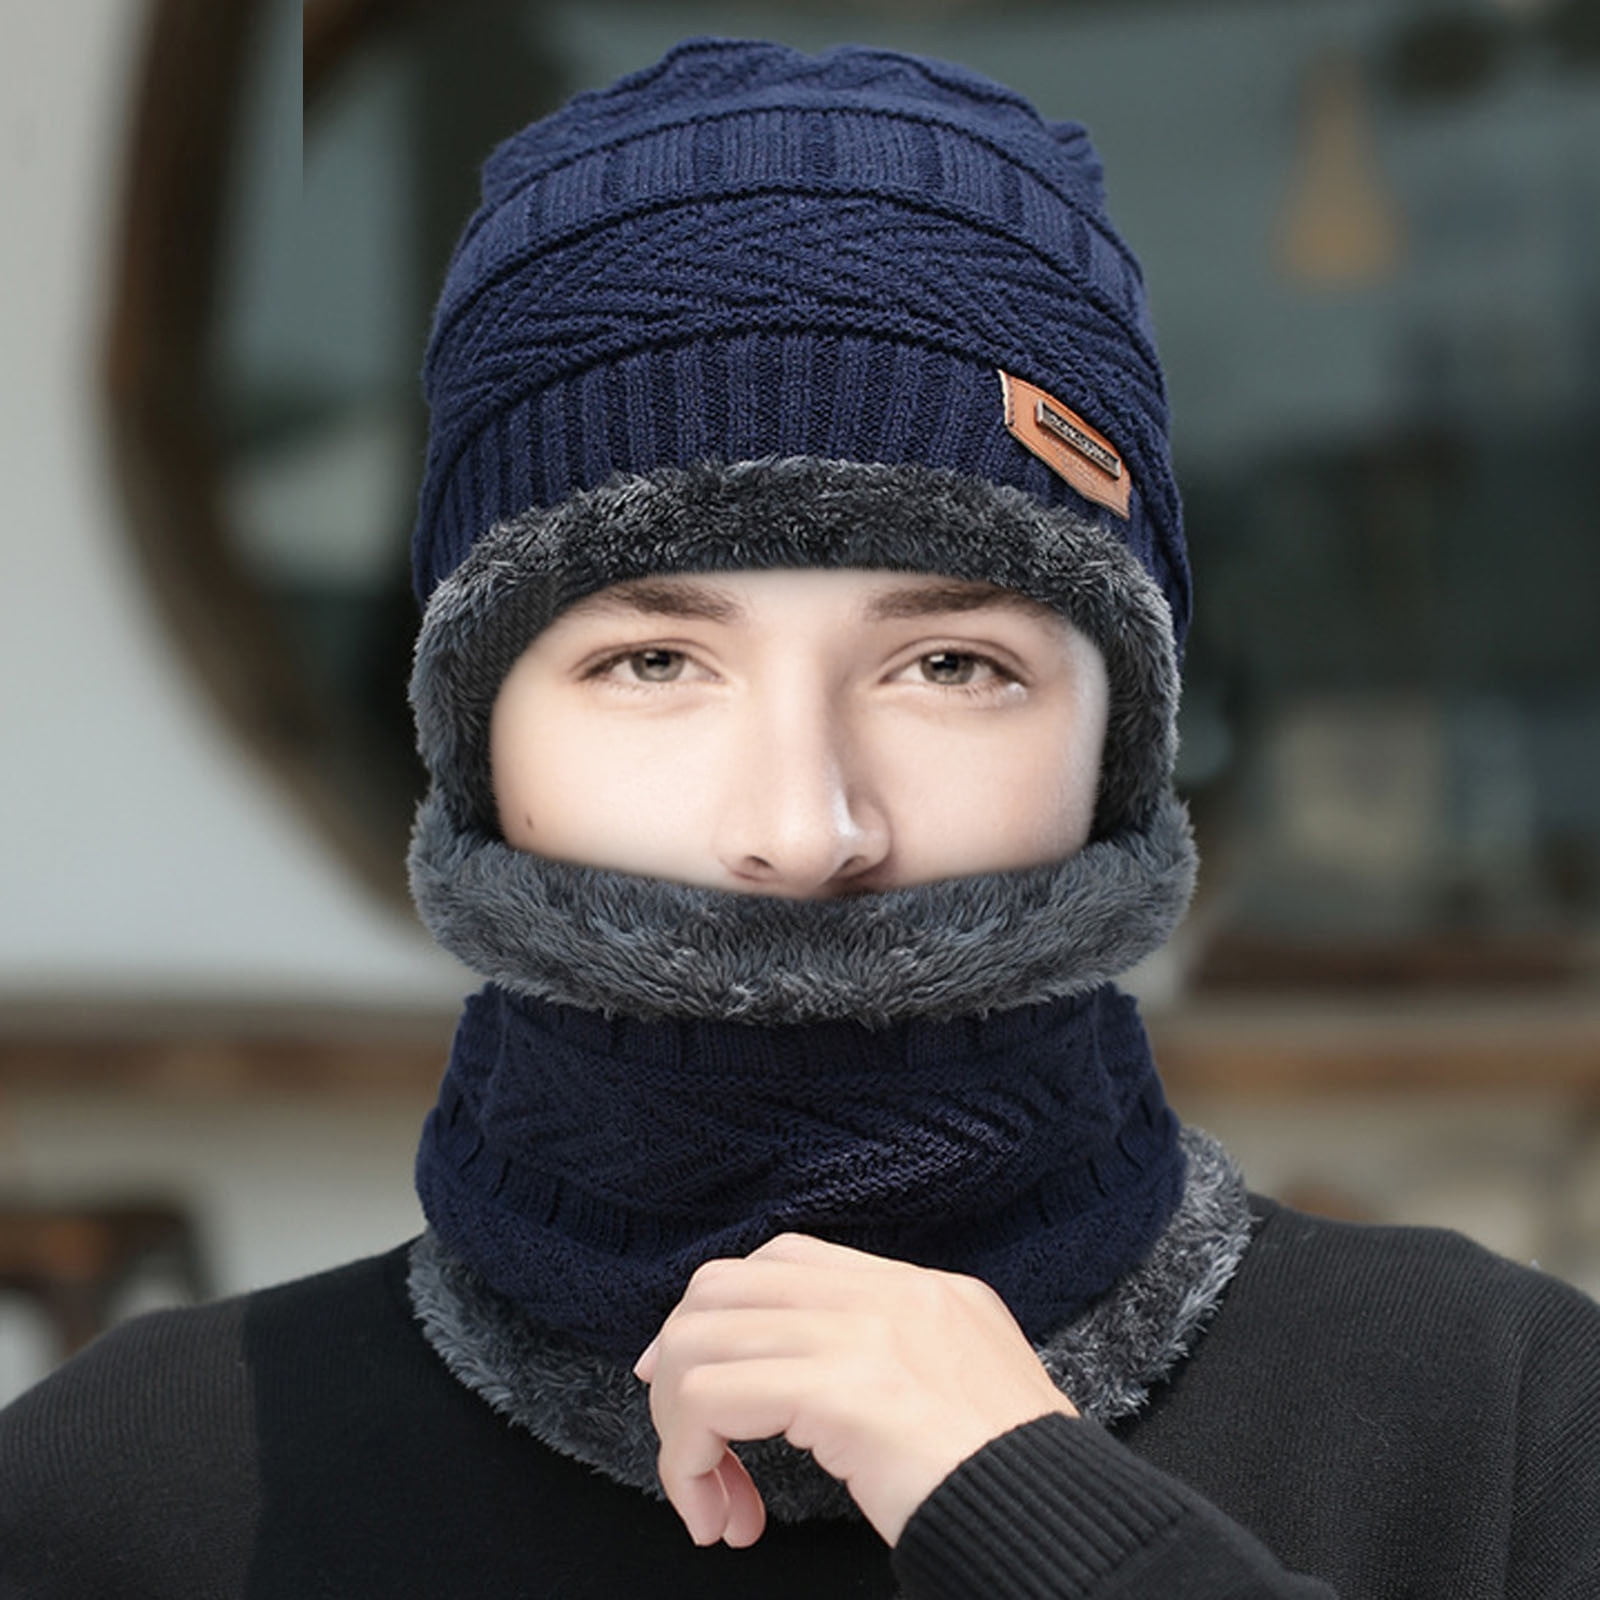 Men Winter Hat Plush Knitting Bonnet Hat Knitted for Home Black at   Men's Clothing store